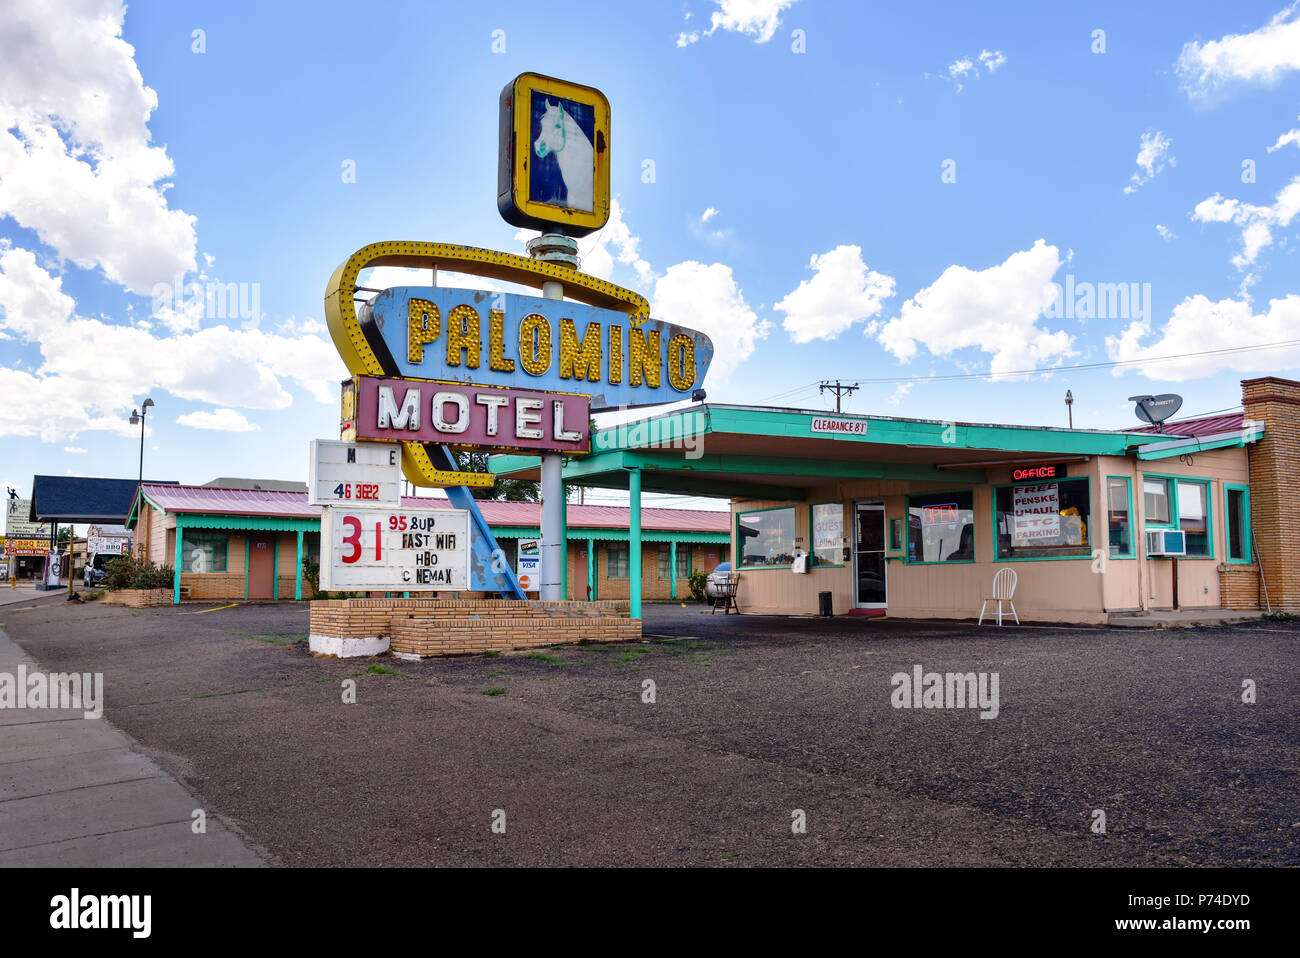 The Palomino Motel on Route 66 in Tucumcari, New Mexico Stock Photo